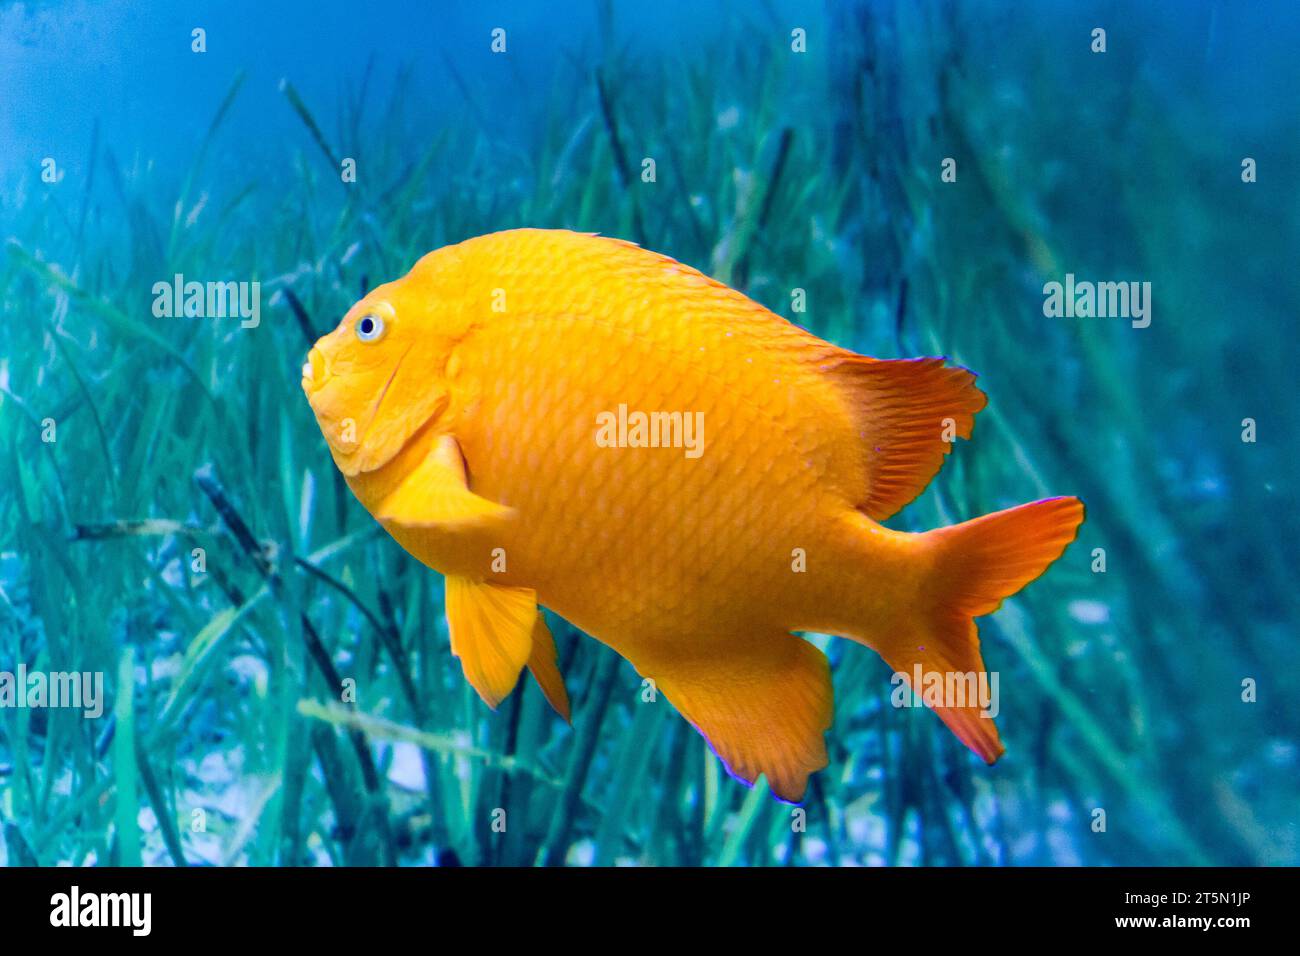 Pesce arancio garibaldi sullo sfondo di acqua e alghe Foto Stock